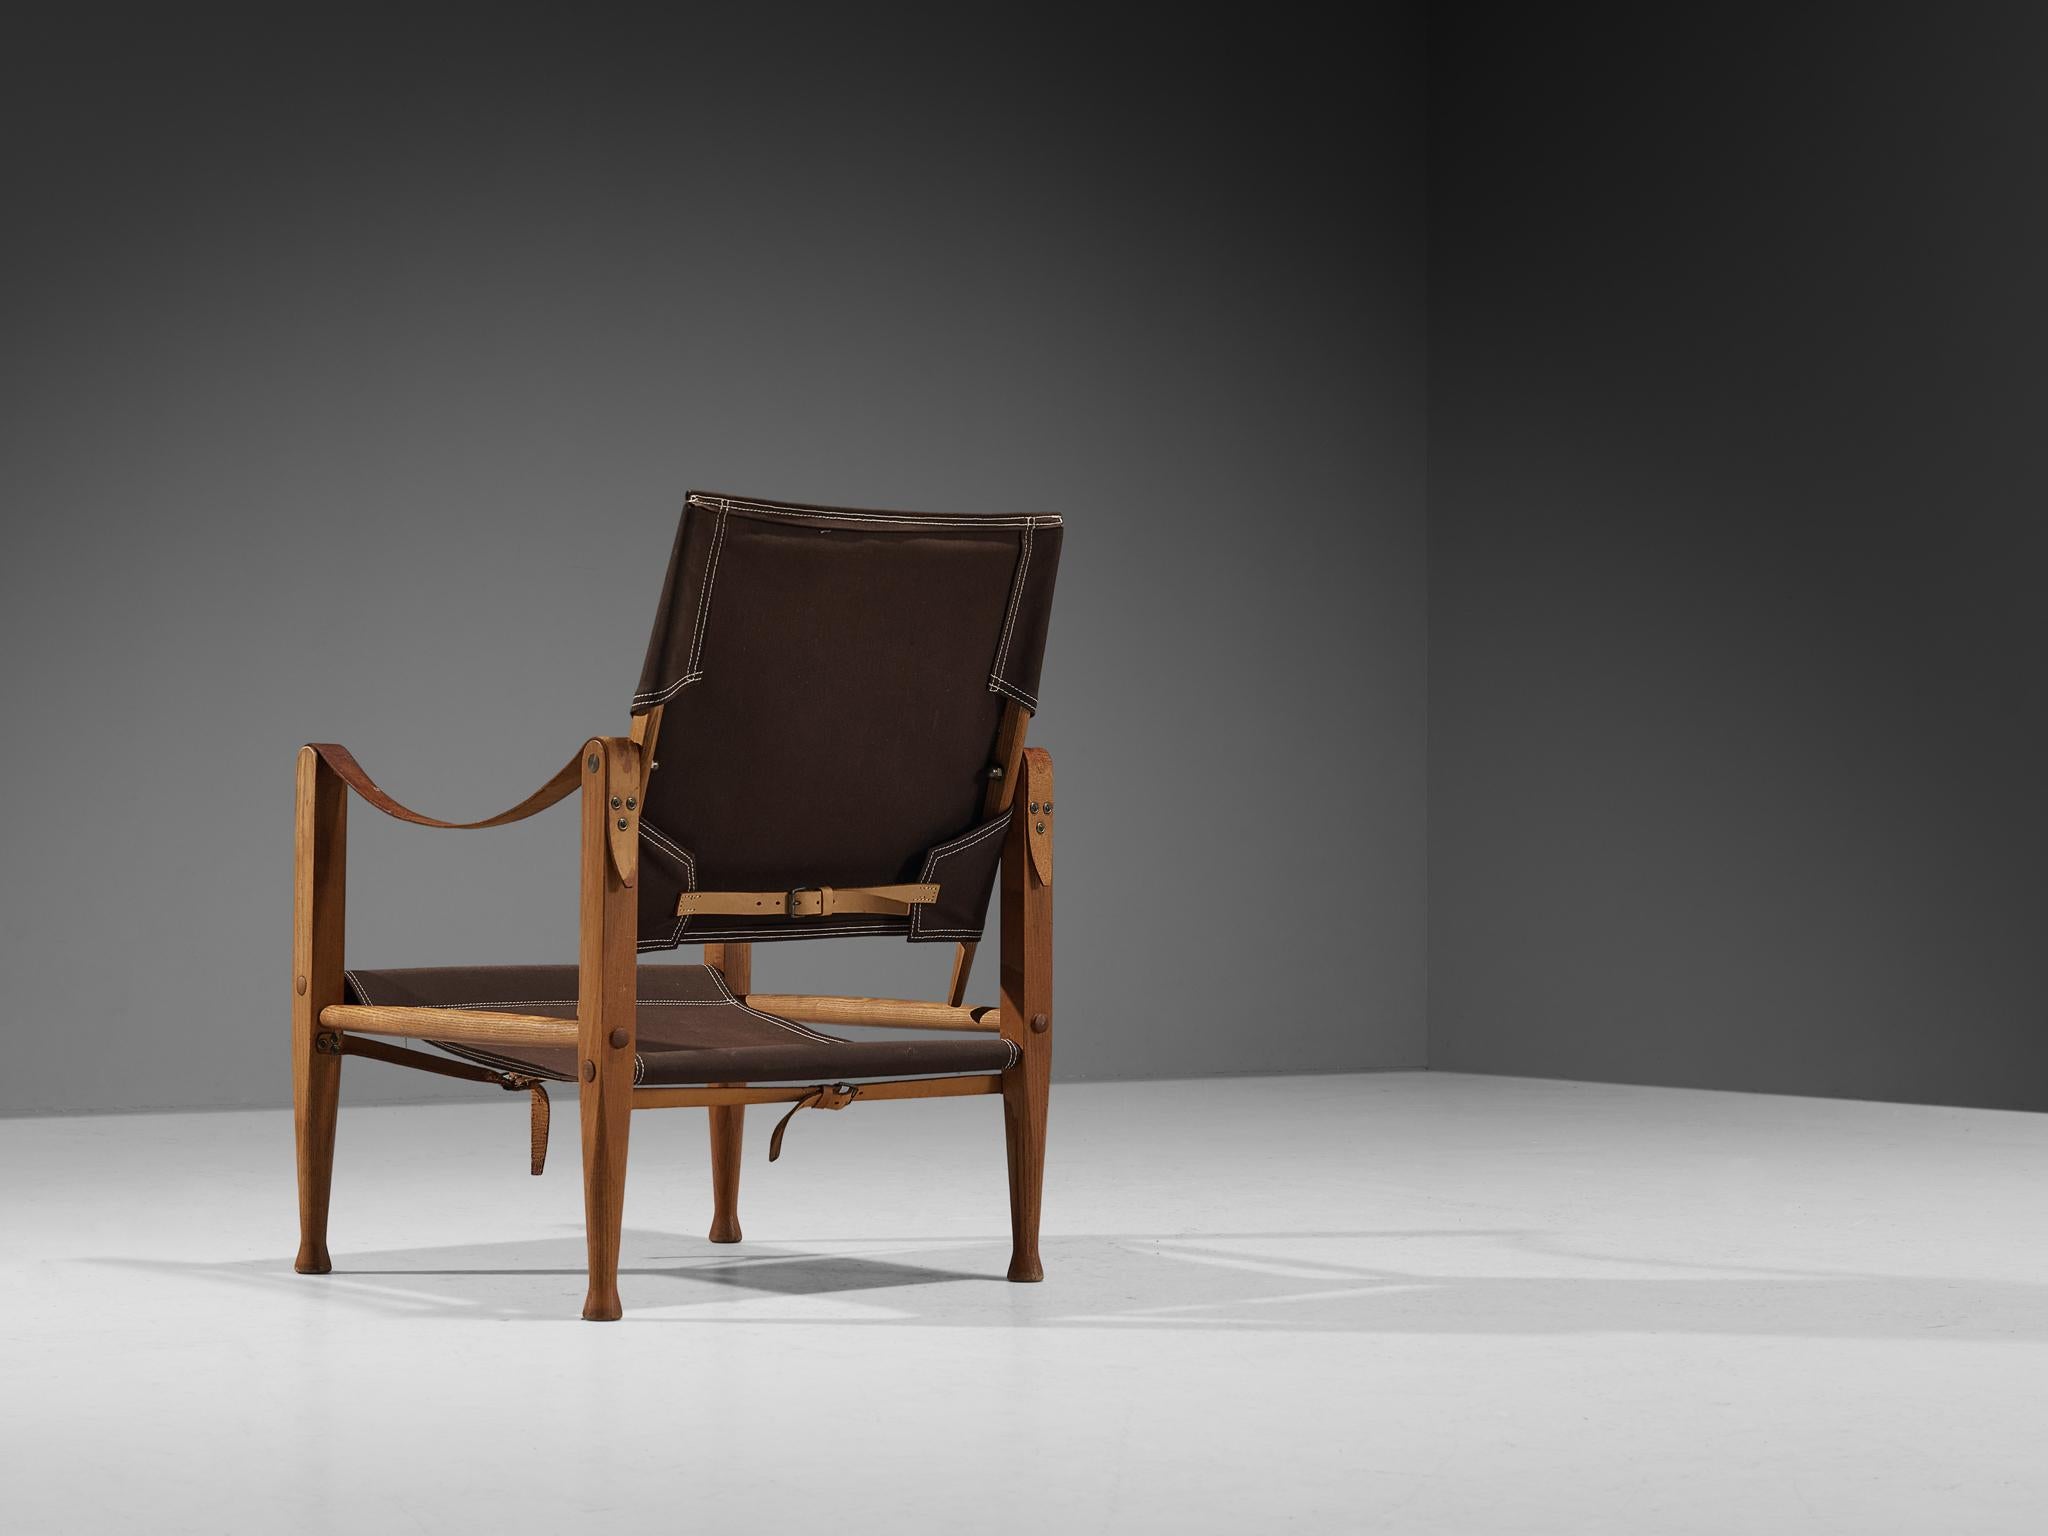 Kaare Klint pour Rud Rasmussen, chaise safari modèle 'KK47000', frêne, toile, métal, laiton, cuir, Danemark, conçue en 1933 et produite dans les années 1960. 

La chaise présente des lignes très élégantes et bien conçues, en combinaison avec des